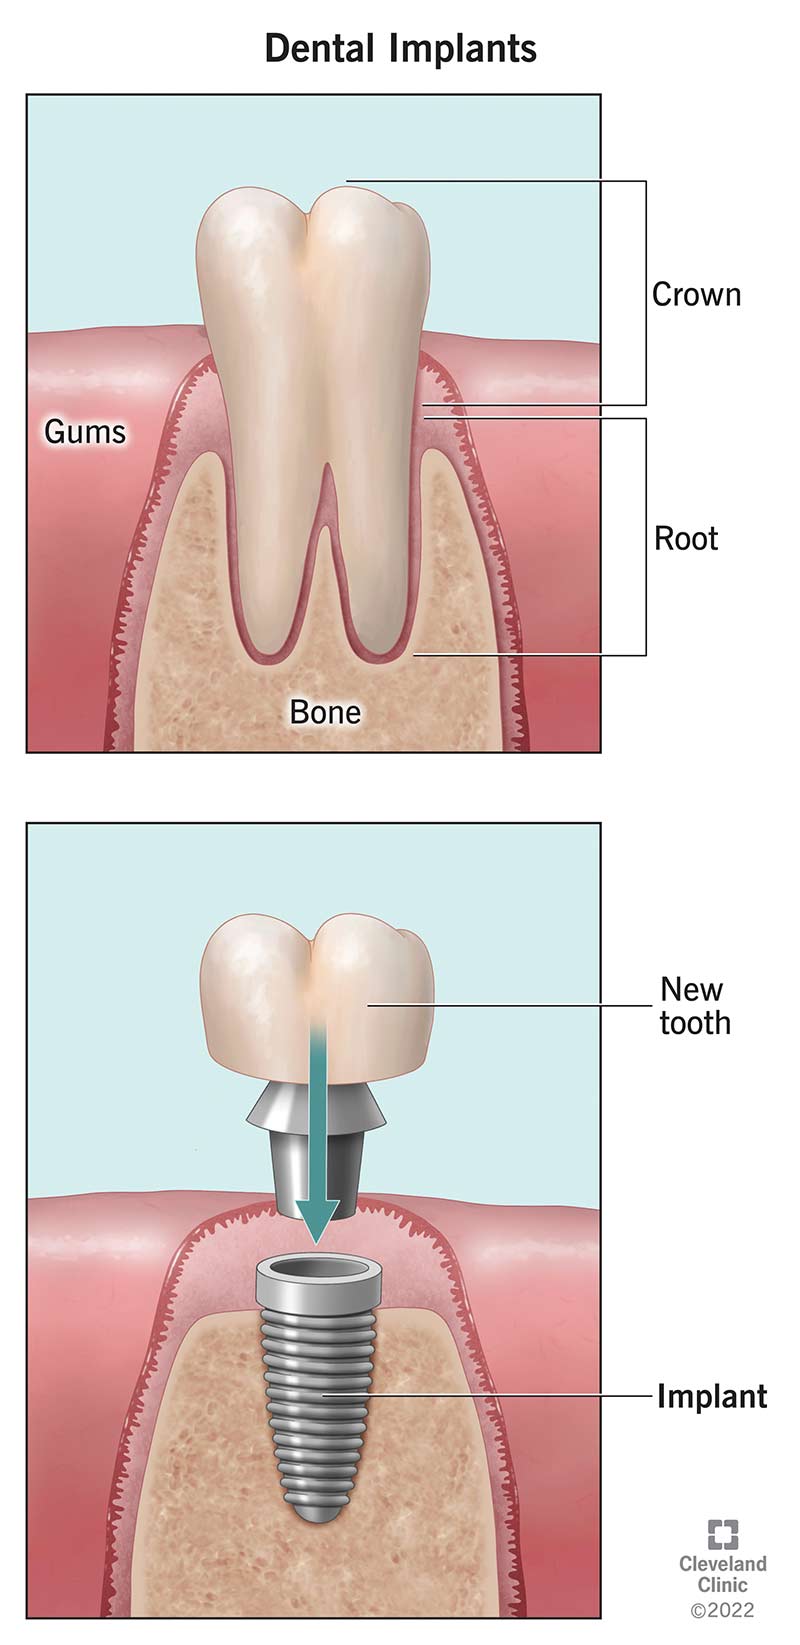 Dente naturale vs. impianto dentale nell'osso mascellare.